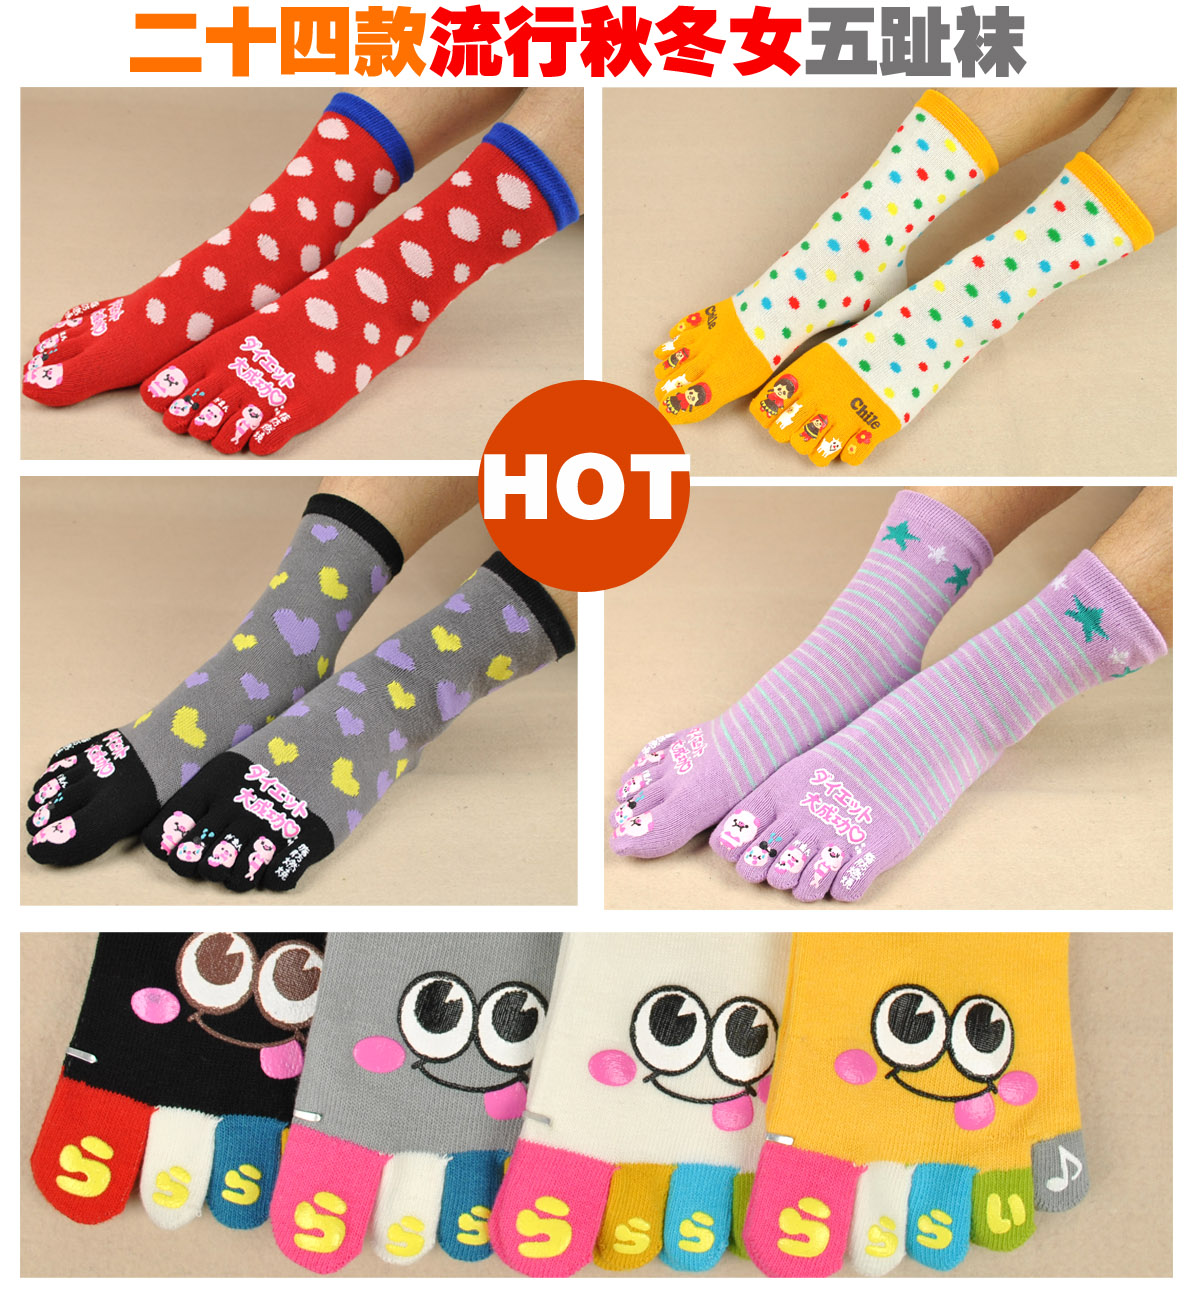 Best toe socks women's 100% cotton cartoon knee-high toe socks